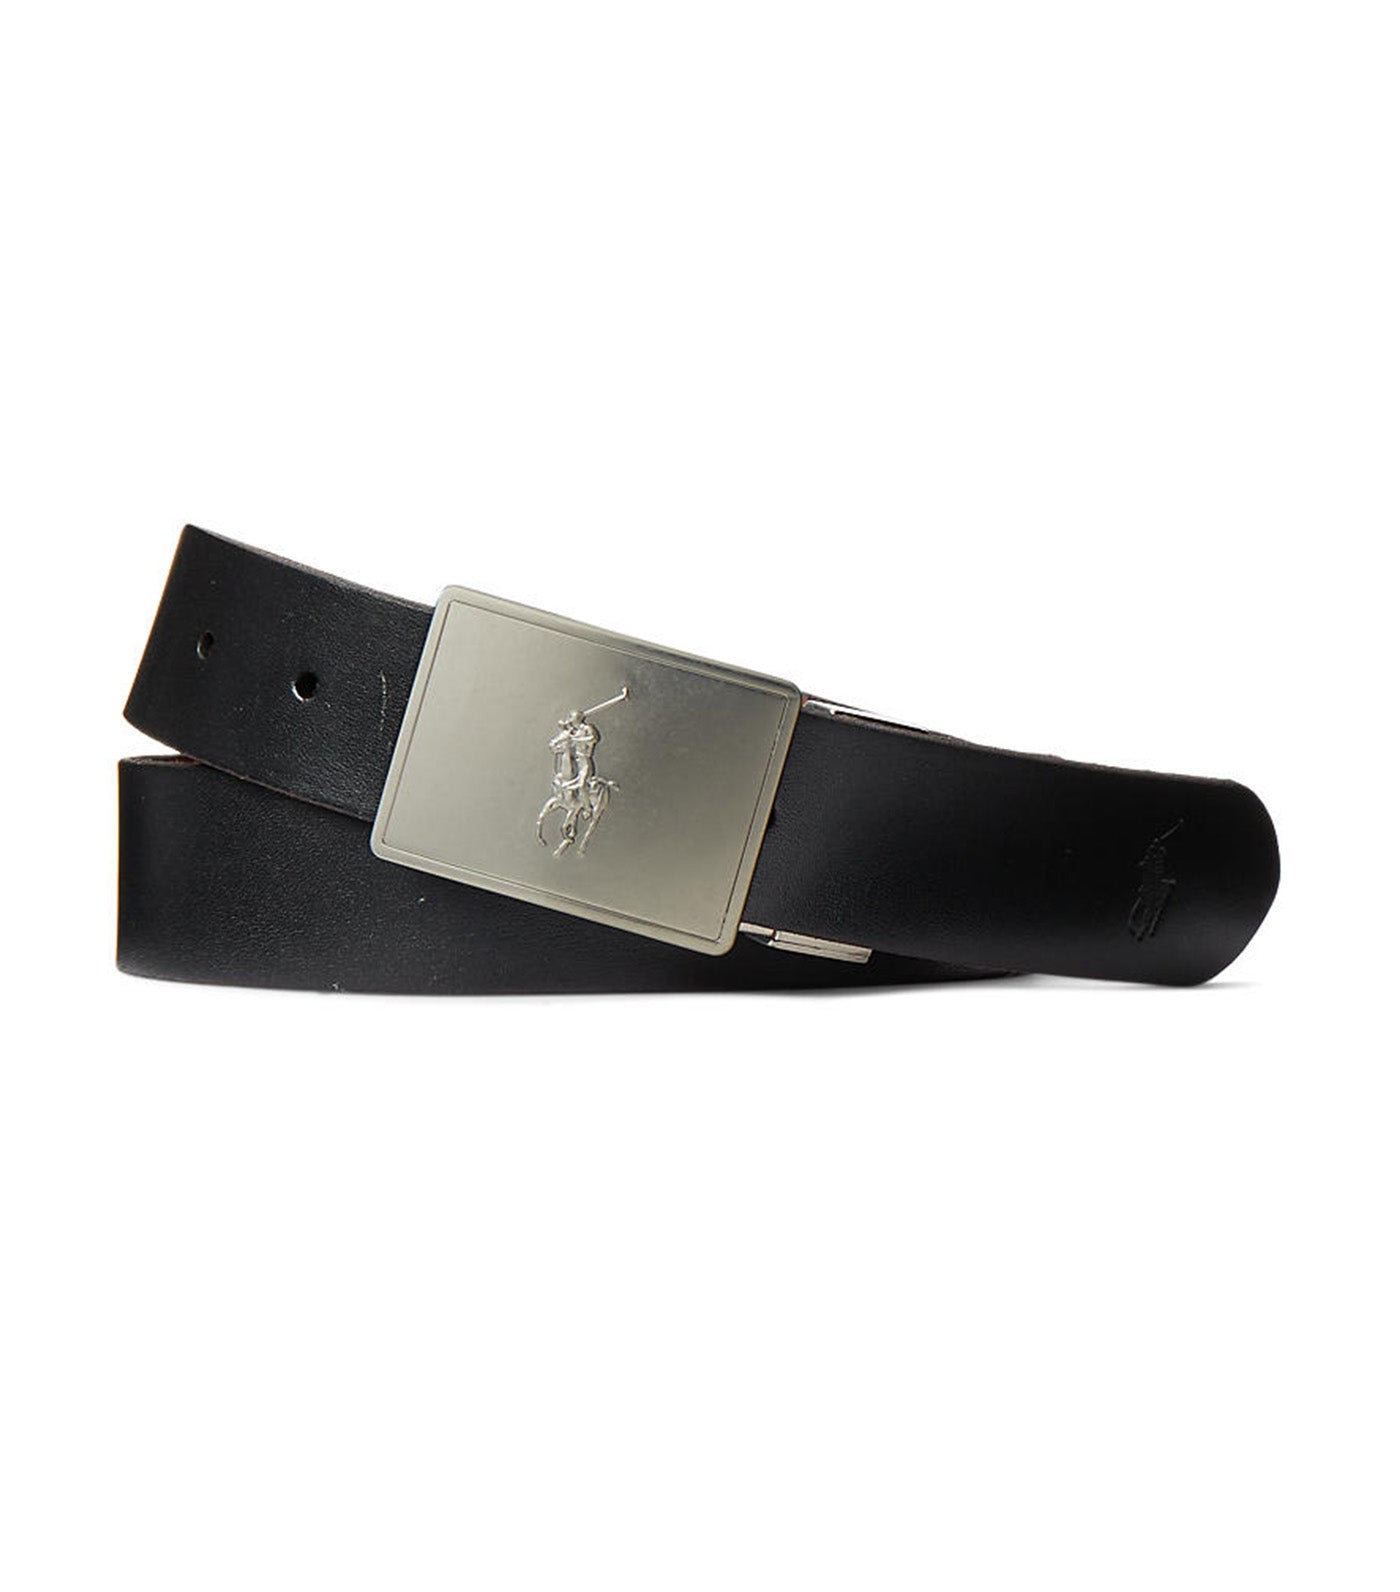 Men's Reversible Leather Belt Gift Set Black/Saddle